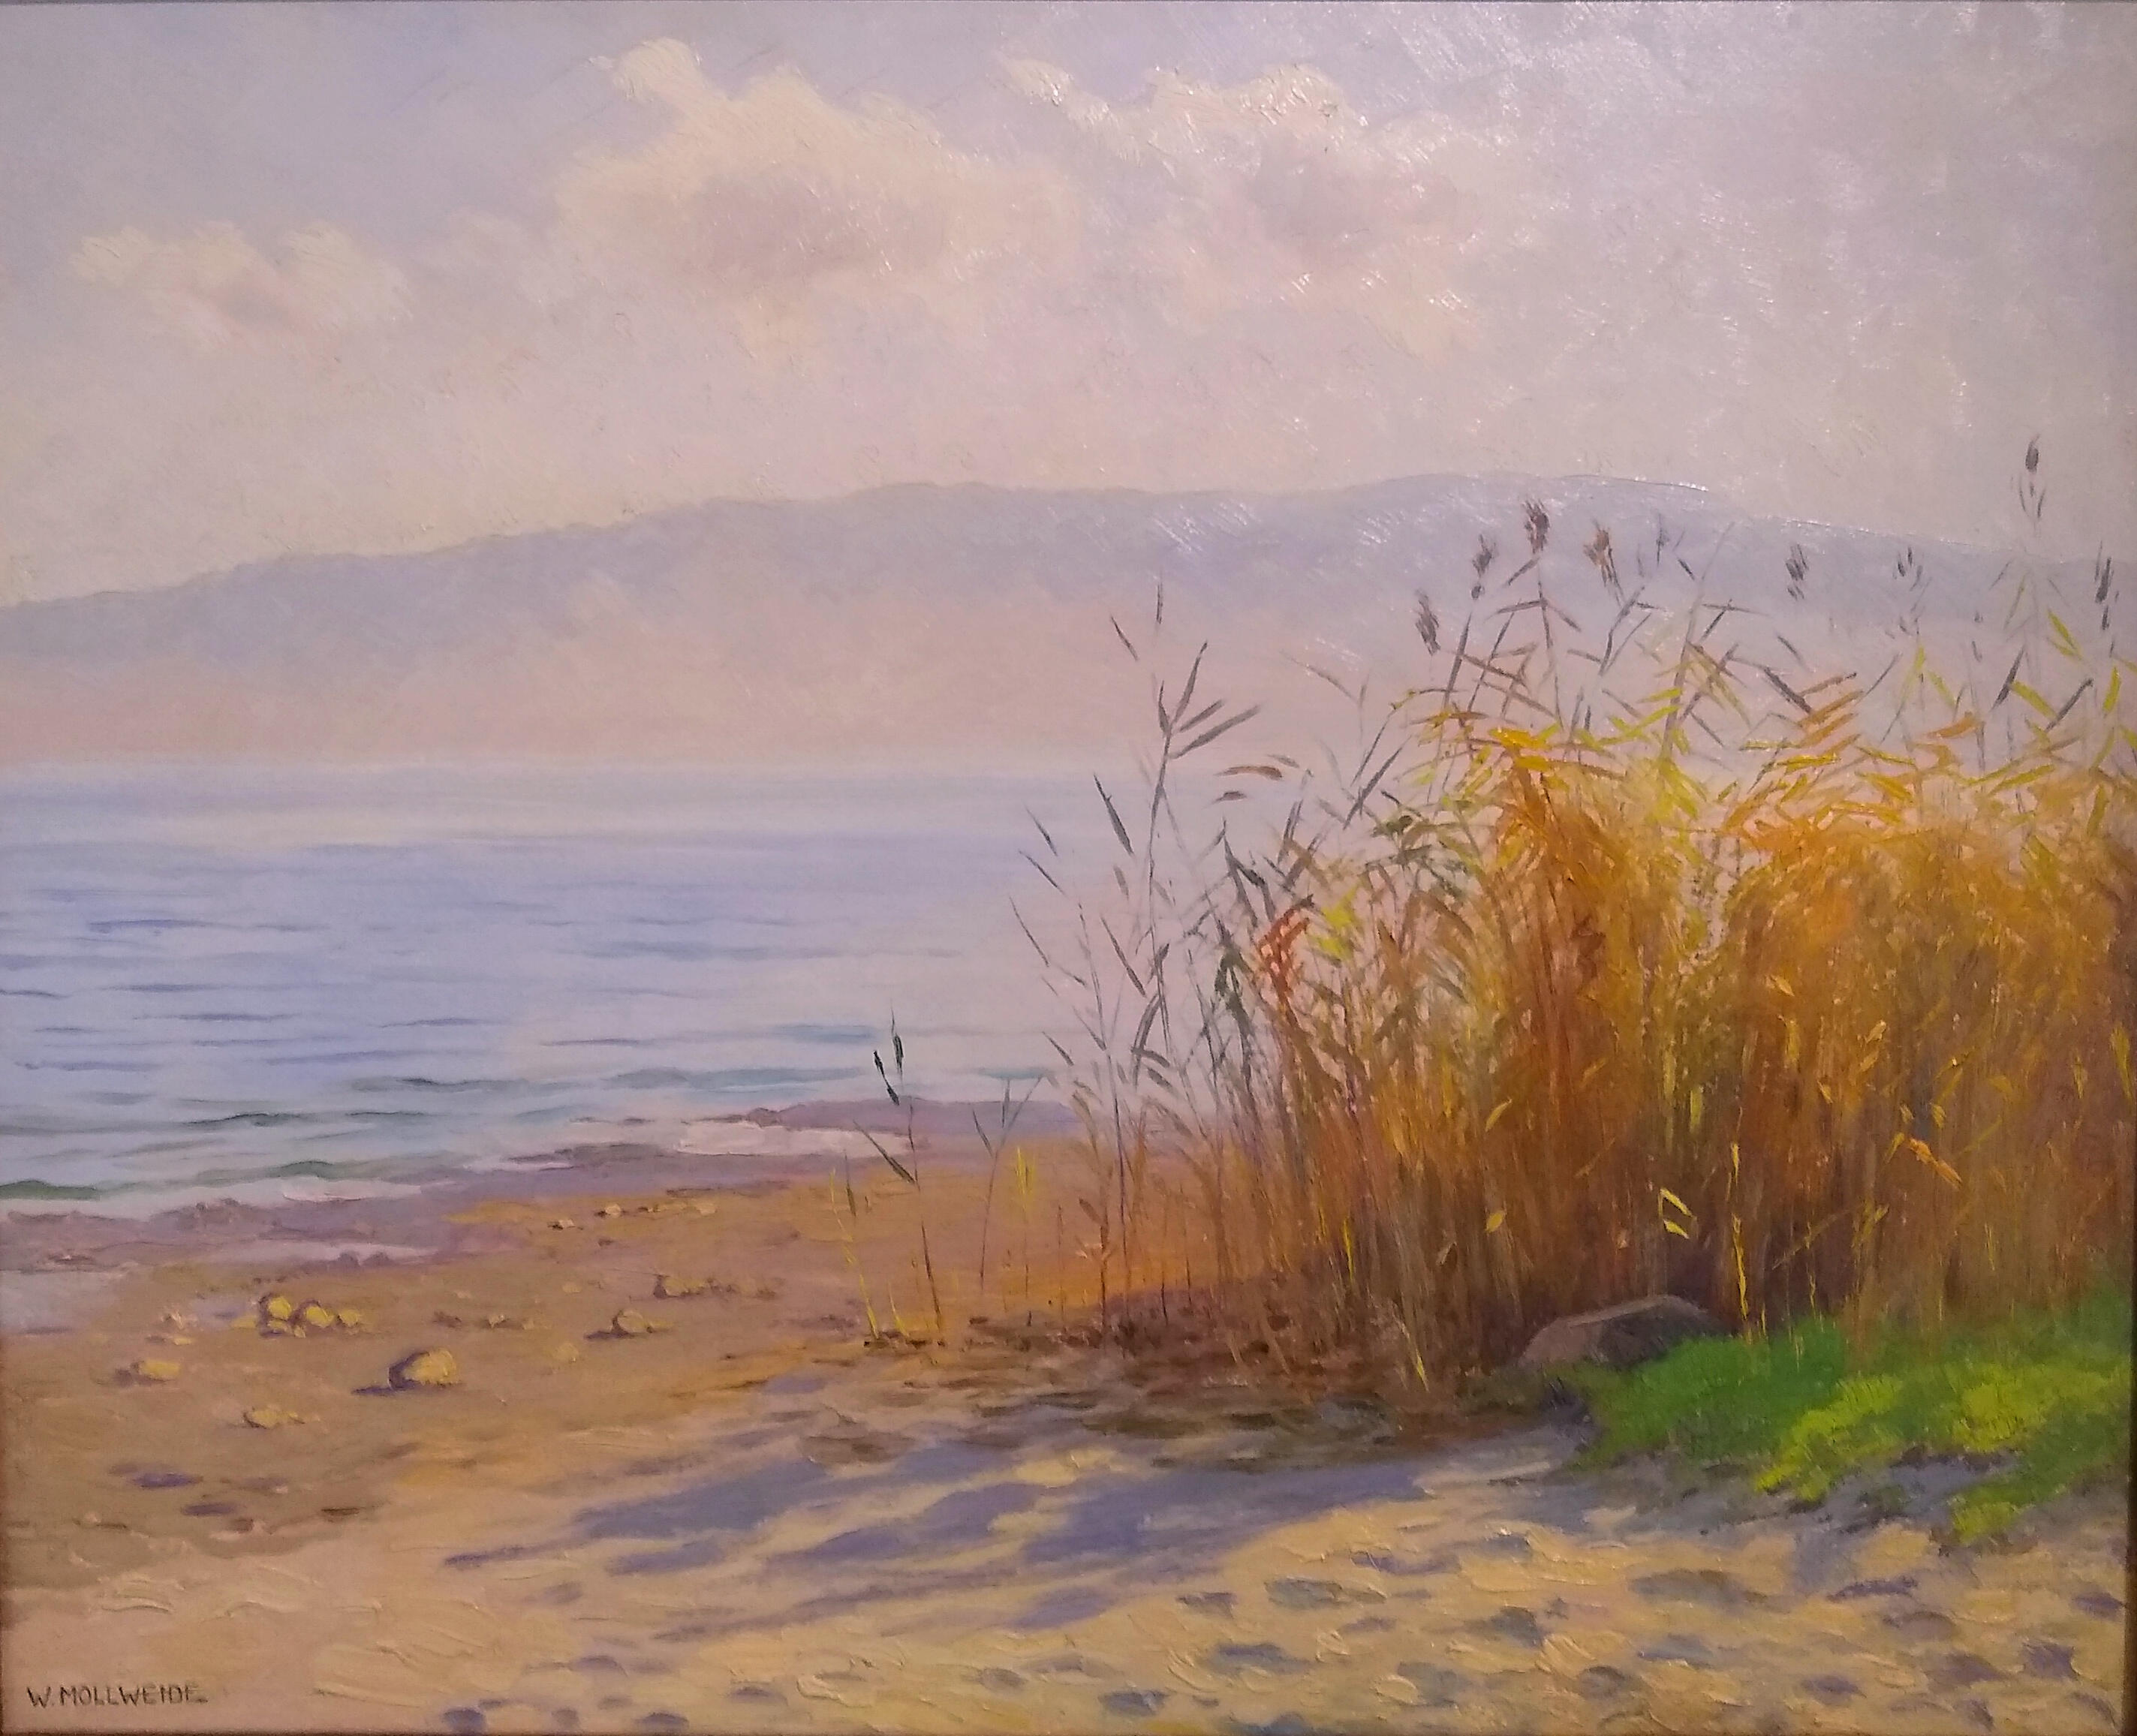  Werner Mollweide, Blick auf den See 